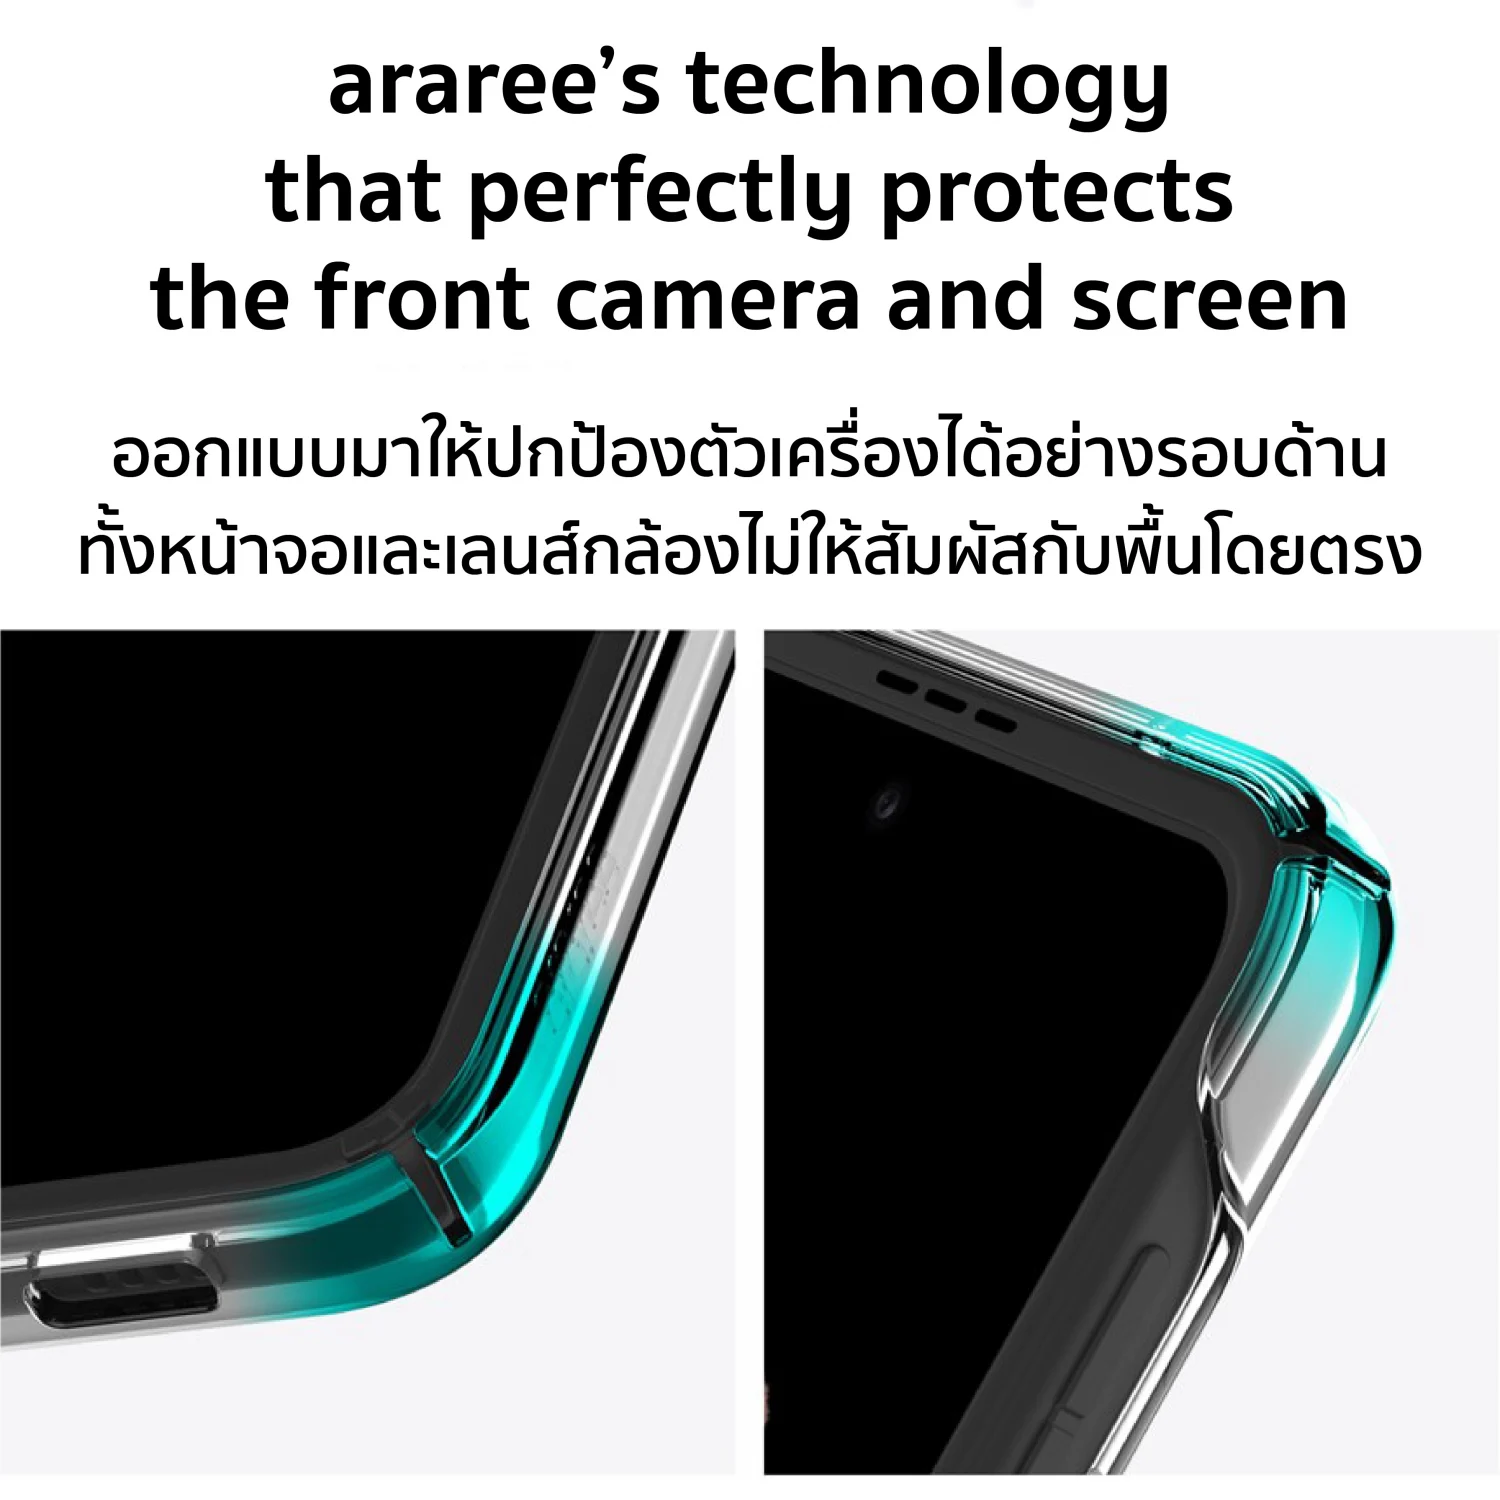 เคส Araree รุ่น Nukin - Galaxy Z Flip 3 - สีใส